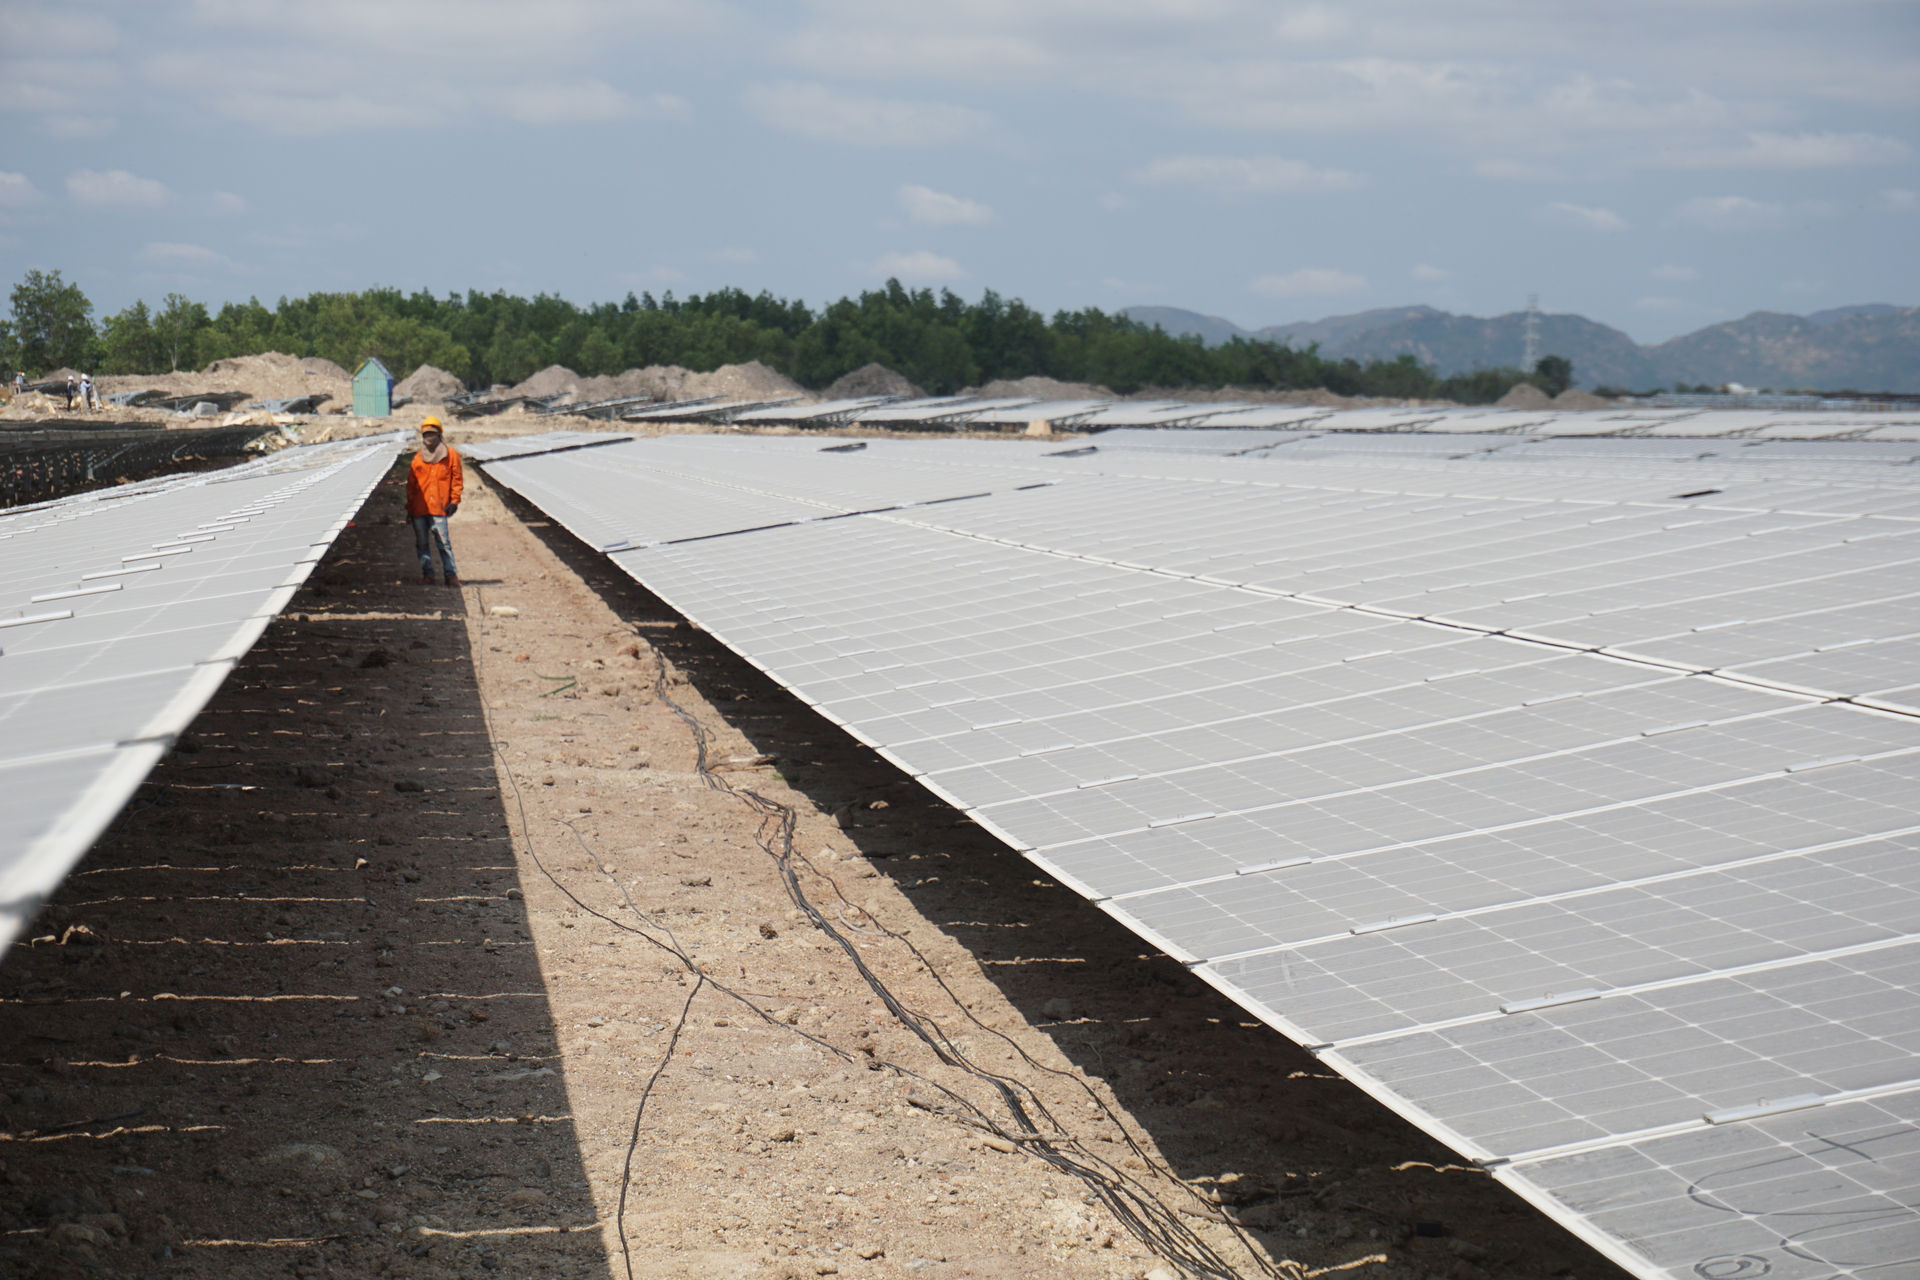 Dự án có quy mô khổng lồ với hơn 705.000 tấm pin mặt trời được bố trí trên 7.800 hệ thống giá đỡ. Ước tính tổng khối lượng thiết bị điện lắp đặt cho dự án là hơn 60.000 tấn.